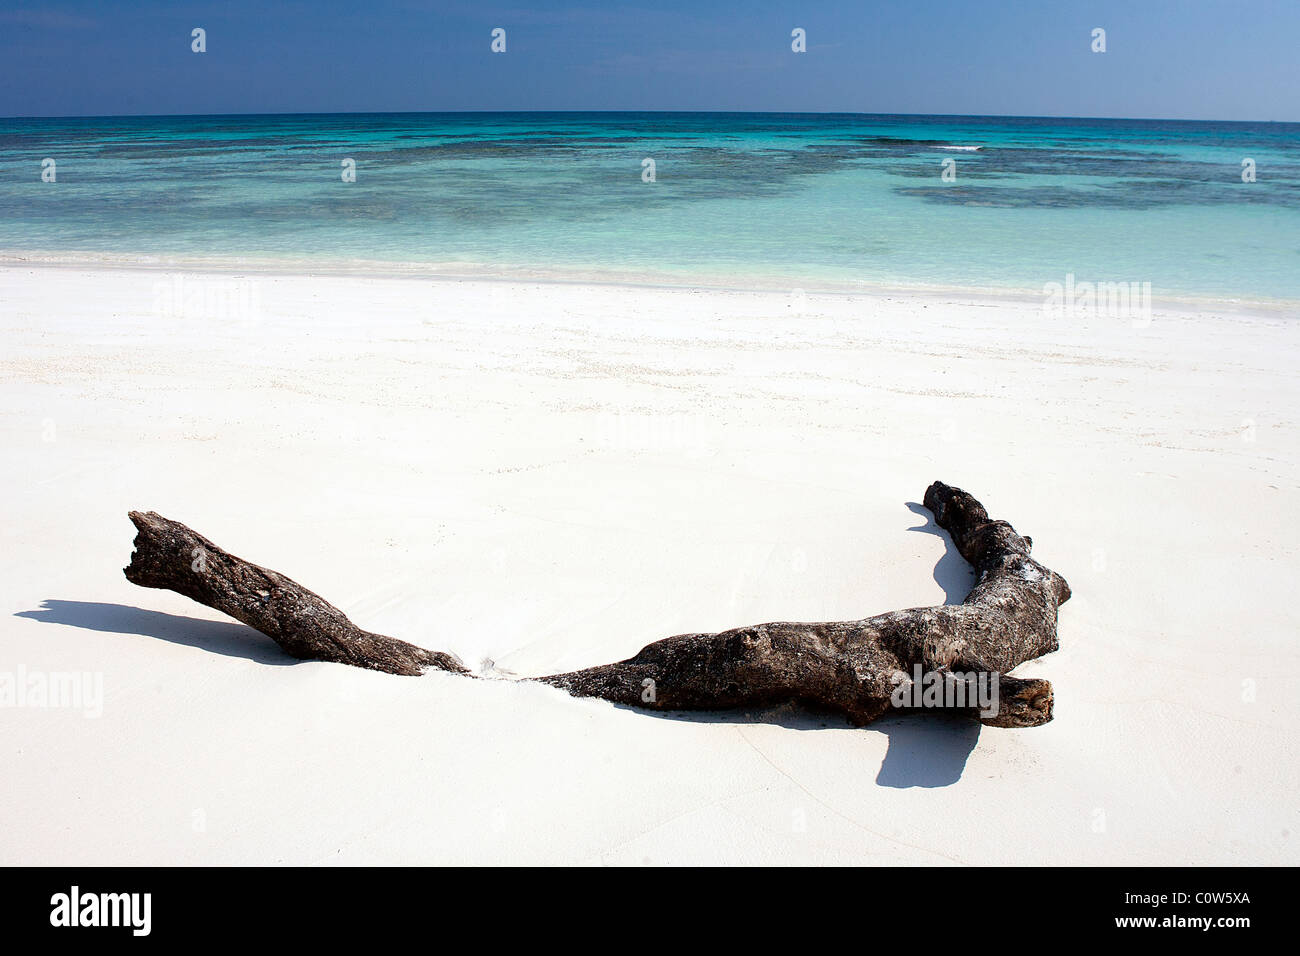 Ein Stück Treibholz liegt in den weißen Sand von einem unberührten tropischen Sandstrand auf den Simialan Inseln von Thailand Stockfoto